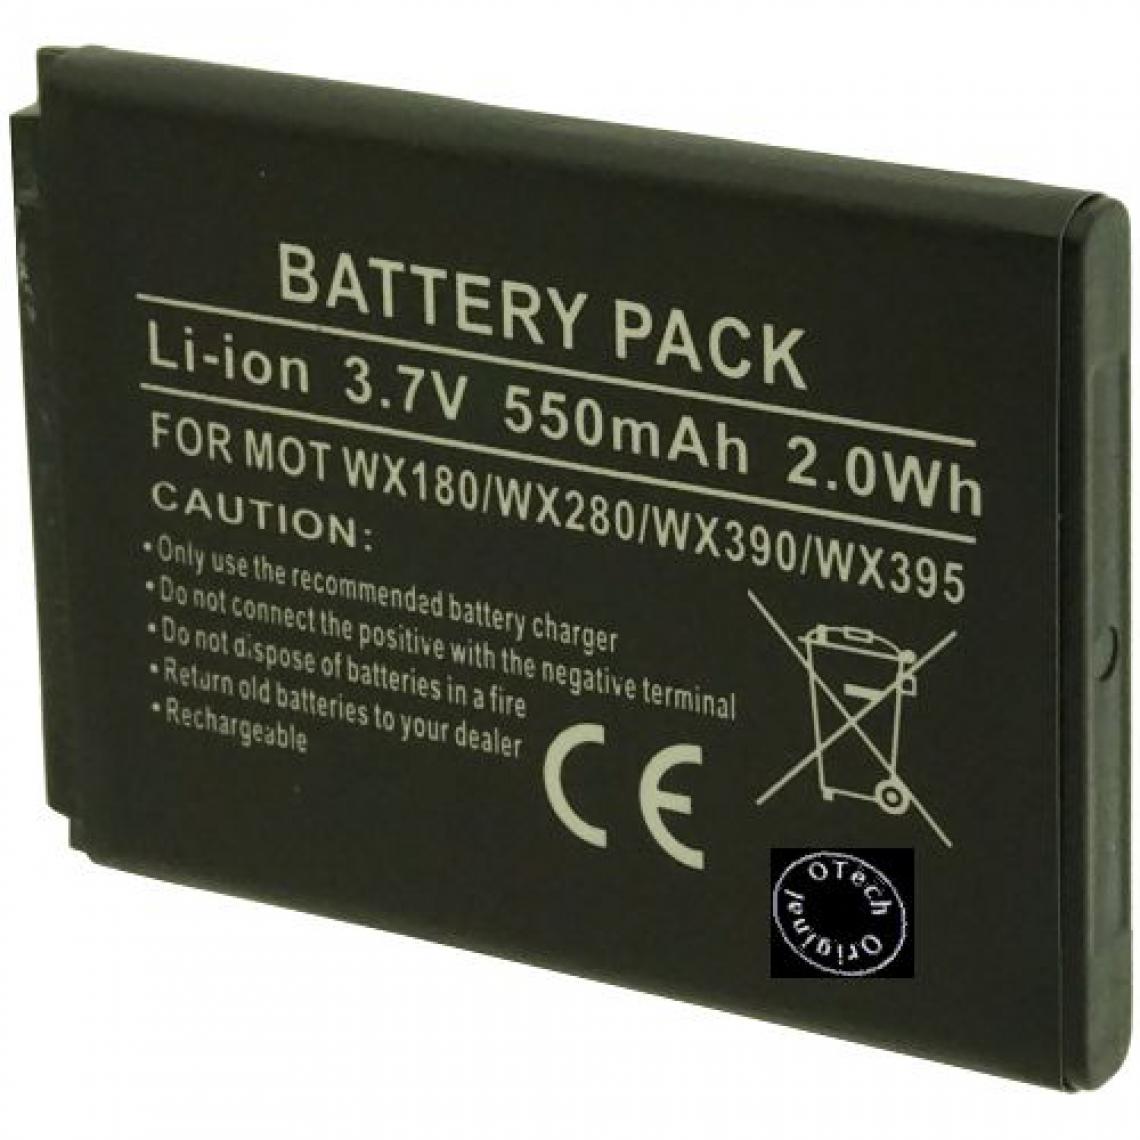 Otech - Batterie compatible pour MOTOROLA WX395 - Batterie téléphone